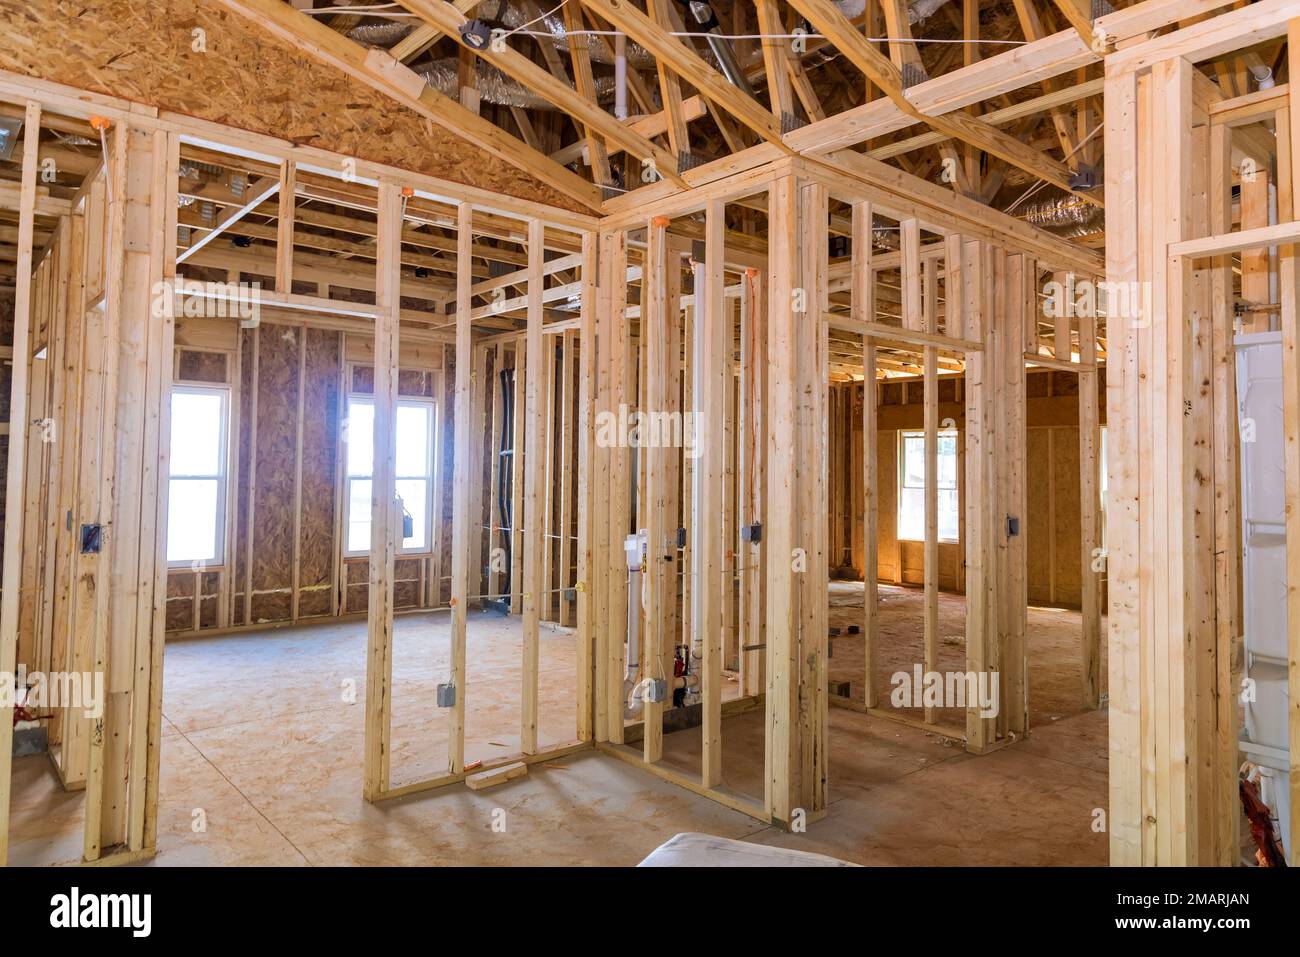 Un nouveau projet de construction résidentielle est de construire une maison de cadre en bois non fini avec le câblage électrique de base comme partie du processus de construction Banque D'Images